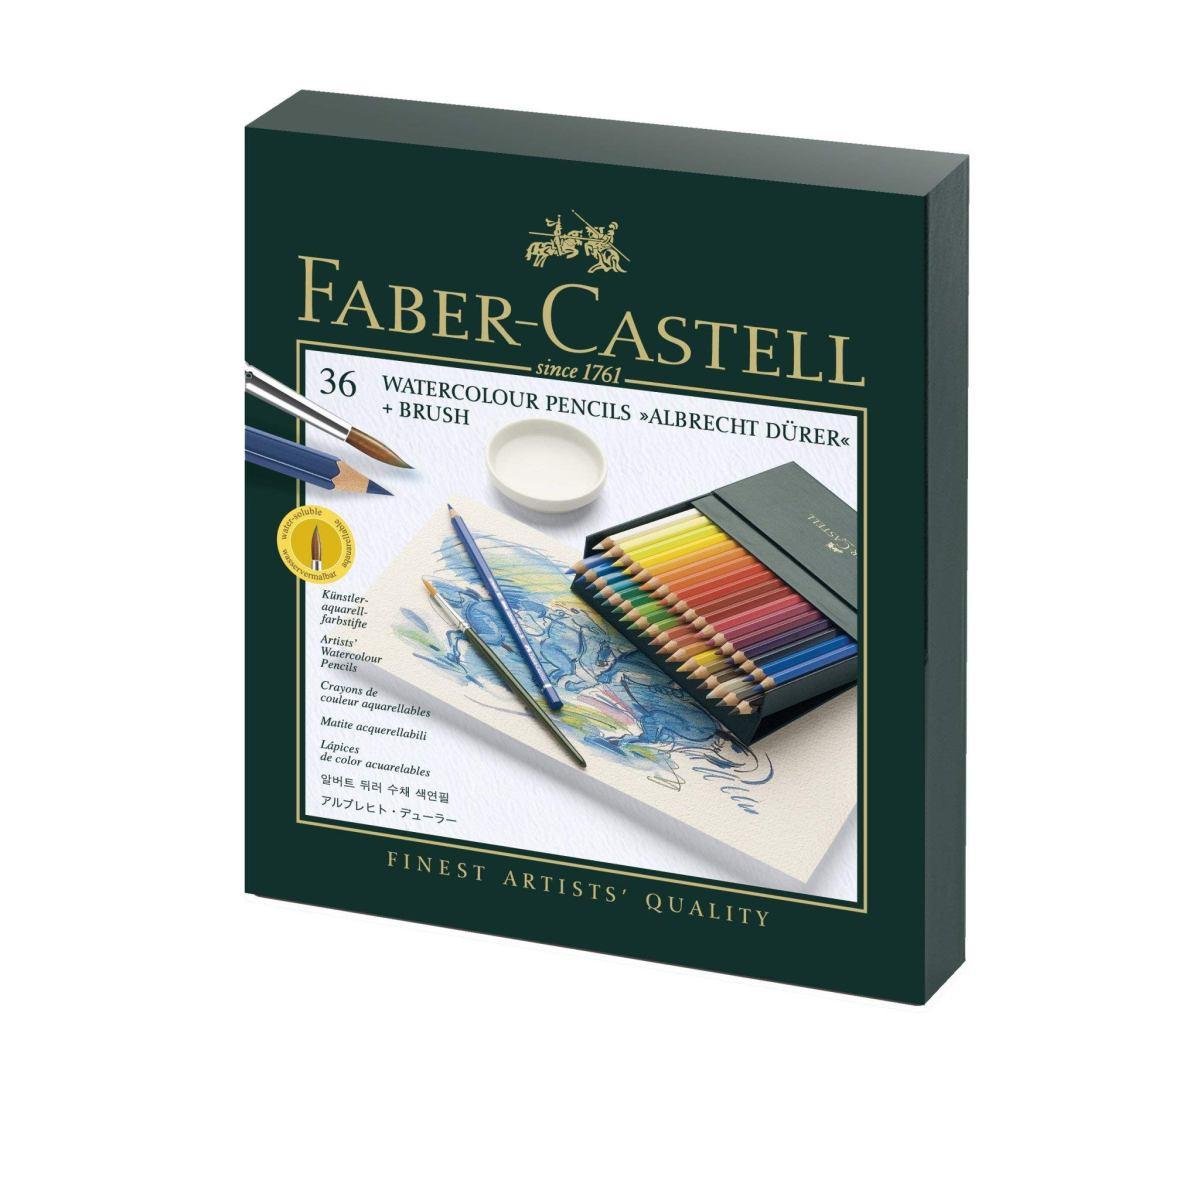 Faber-castell Studio box 36 colori acquarellabili + pennello 9590  4005401175384